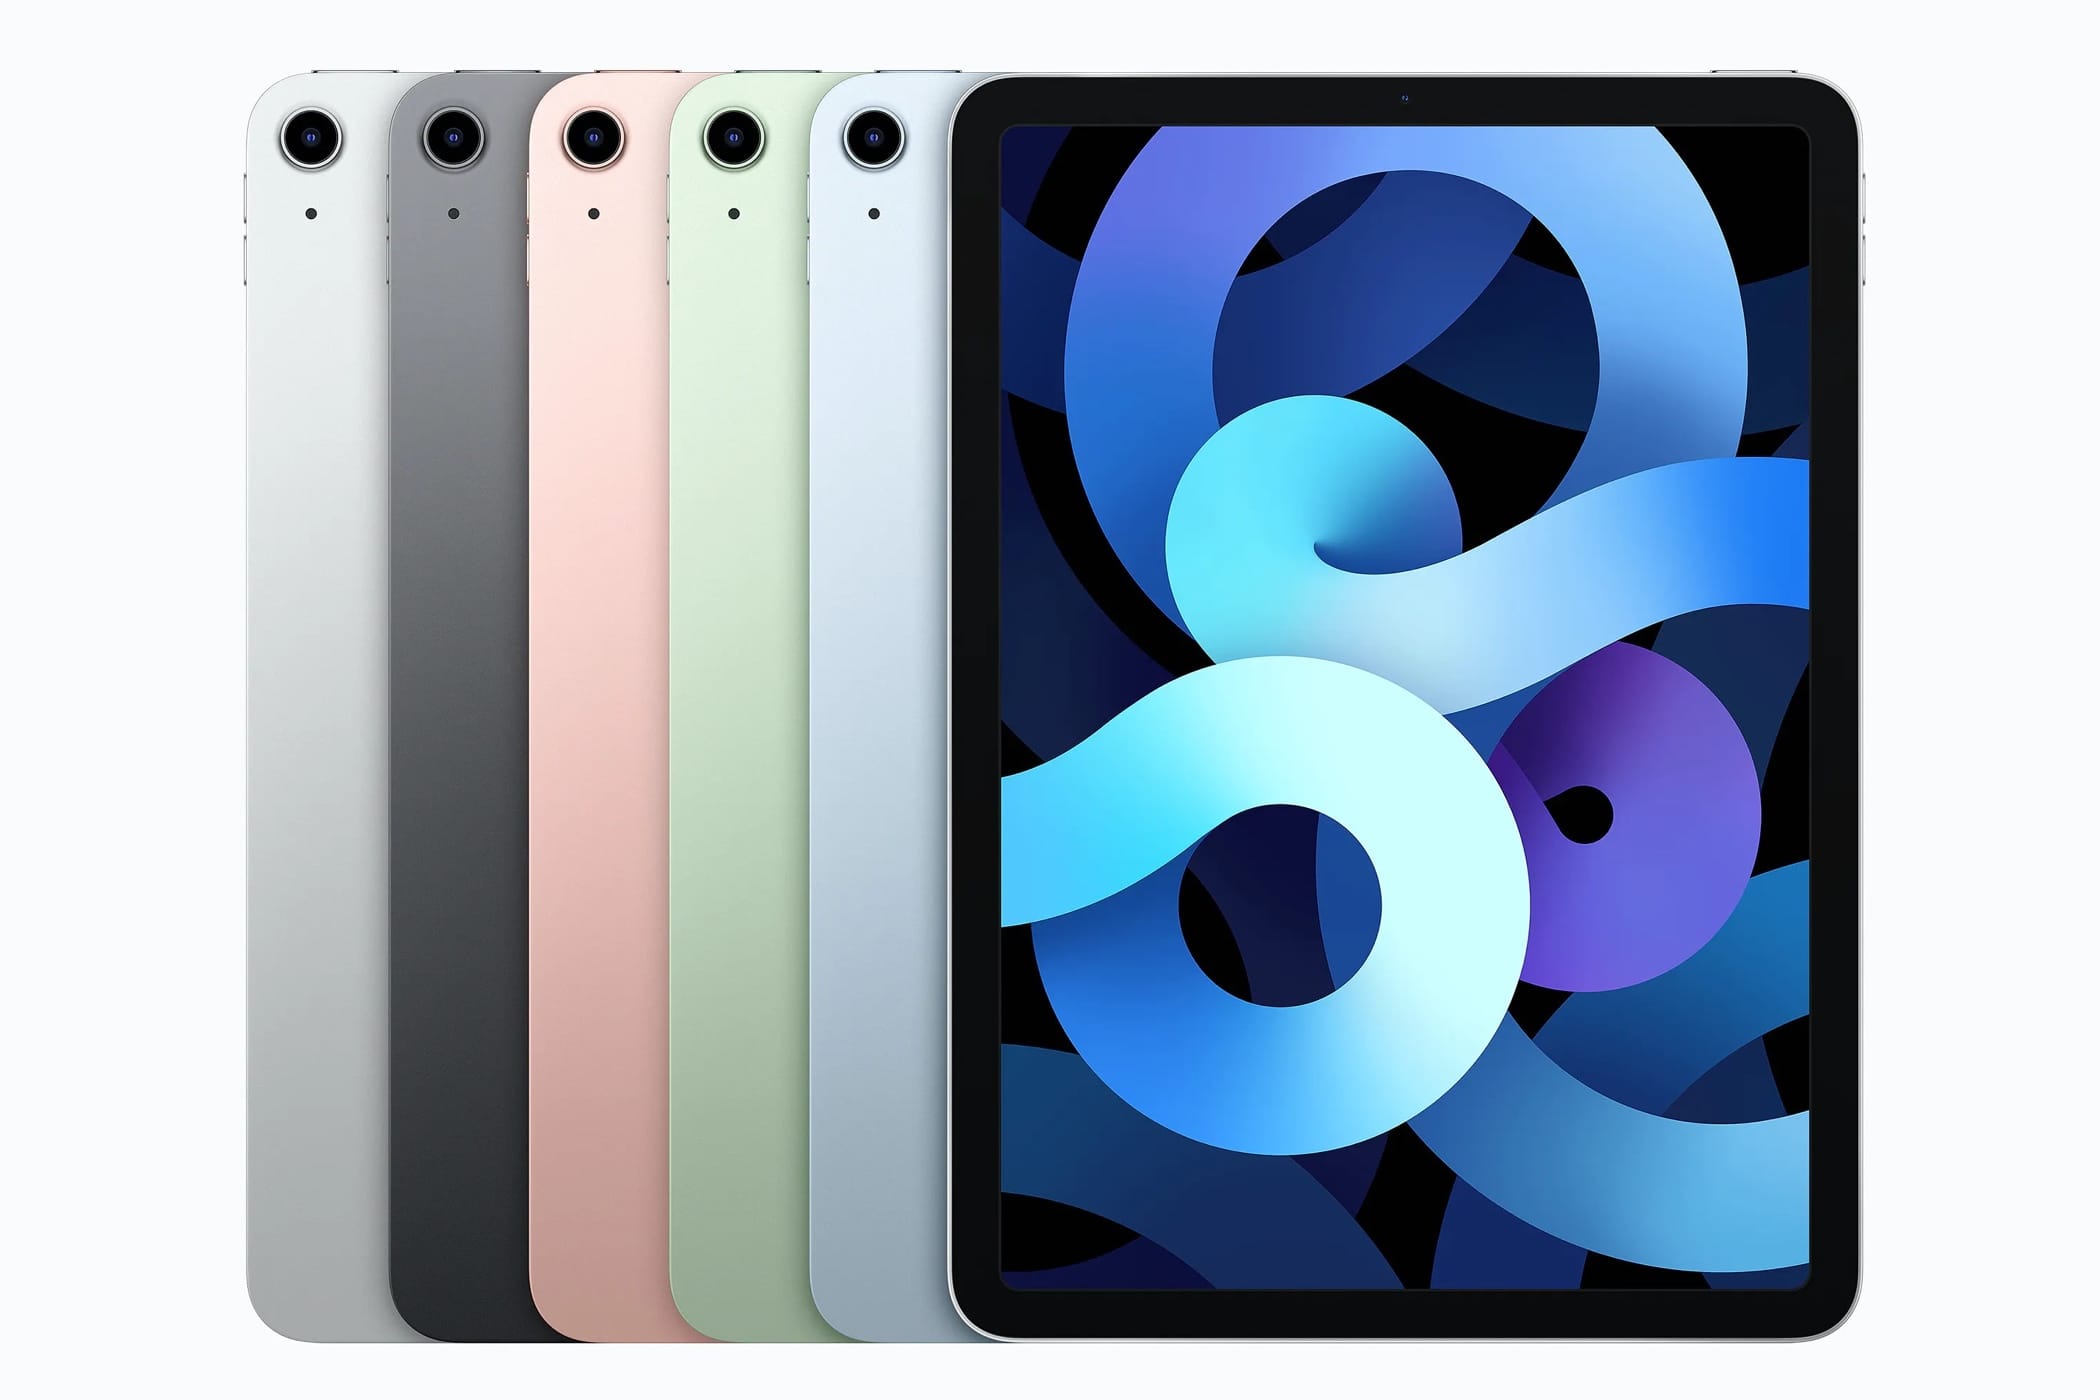 Ahorre hasta $ 100: Apple comienza a vender iPad Air 4 reacondicionados